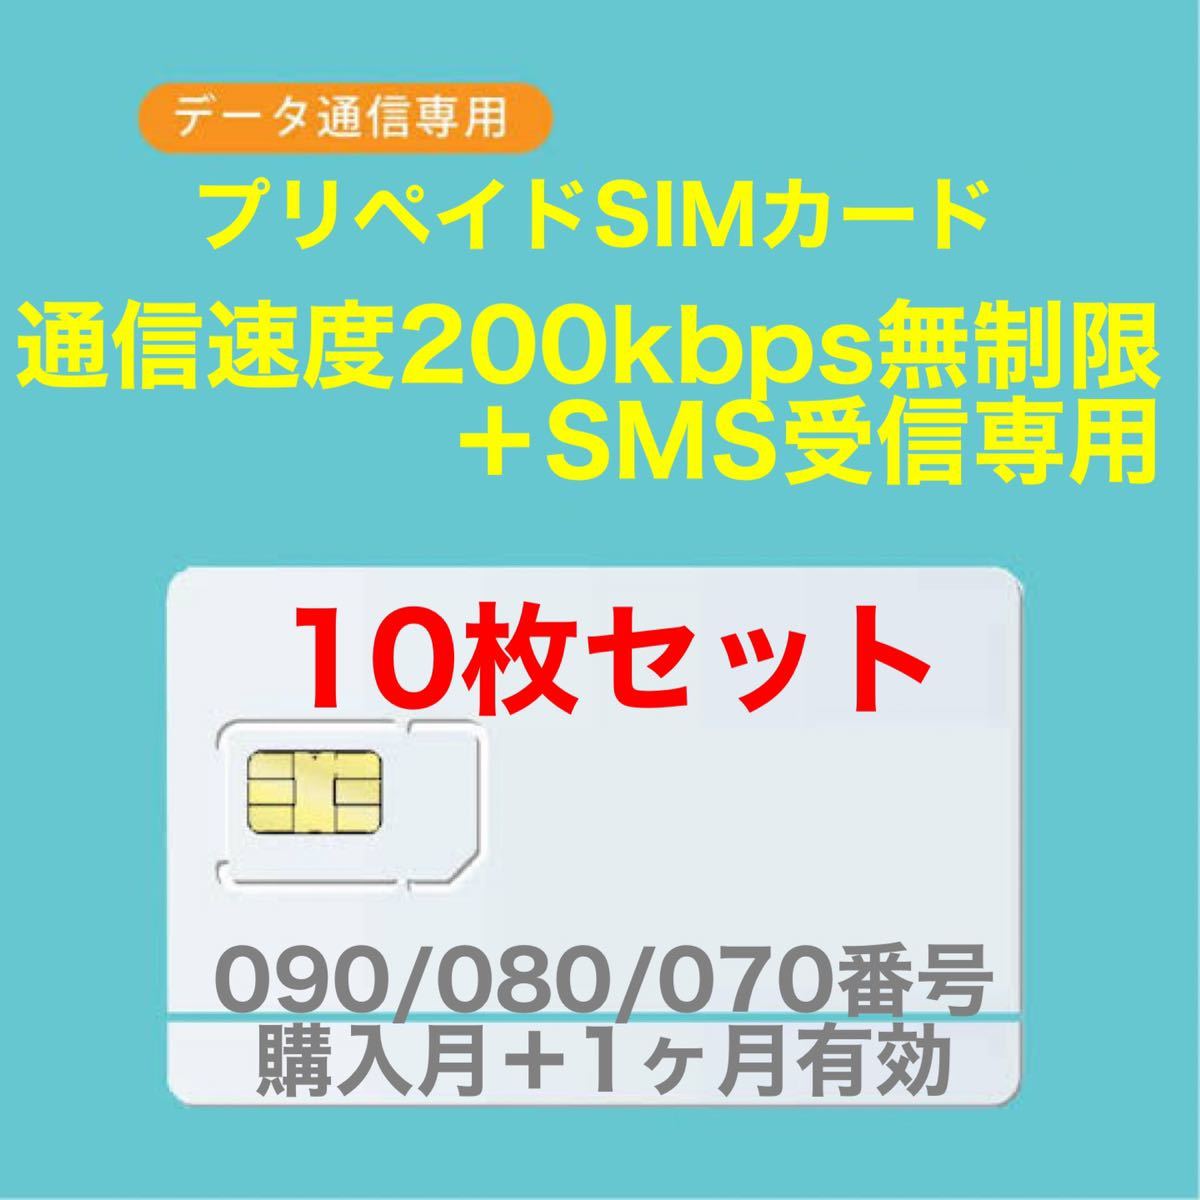 【10枚セット】プリペイドSIMカード データ通信使い放題SIMカード SMS受信可能 SMS受信ができる090/080/070番号使用